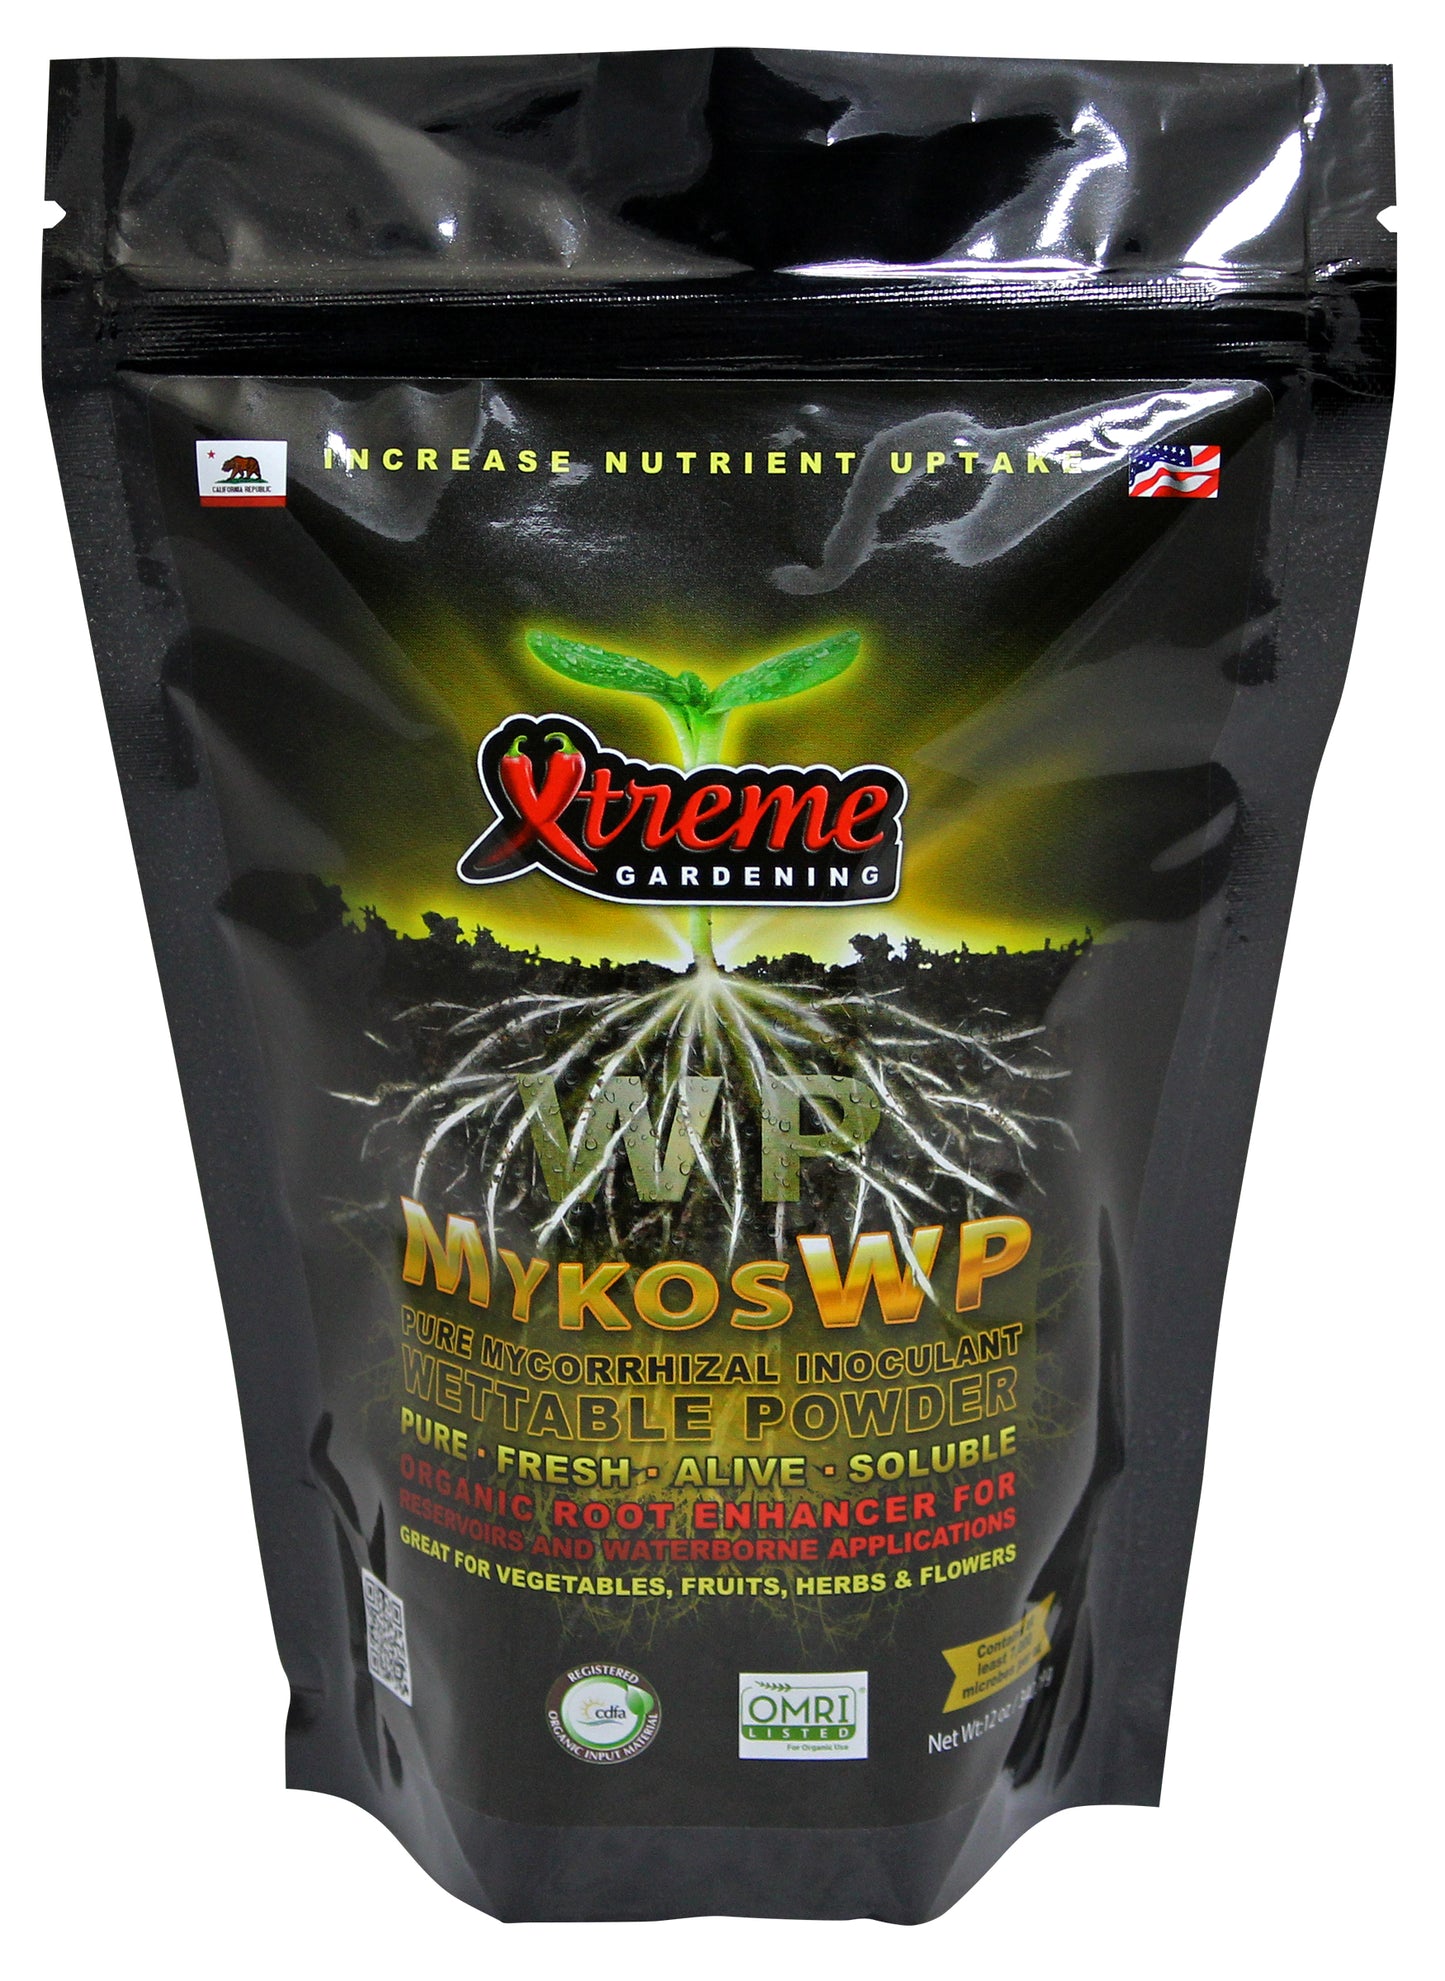 Xtreme Gardening Mykos WP 12 oz 